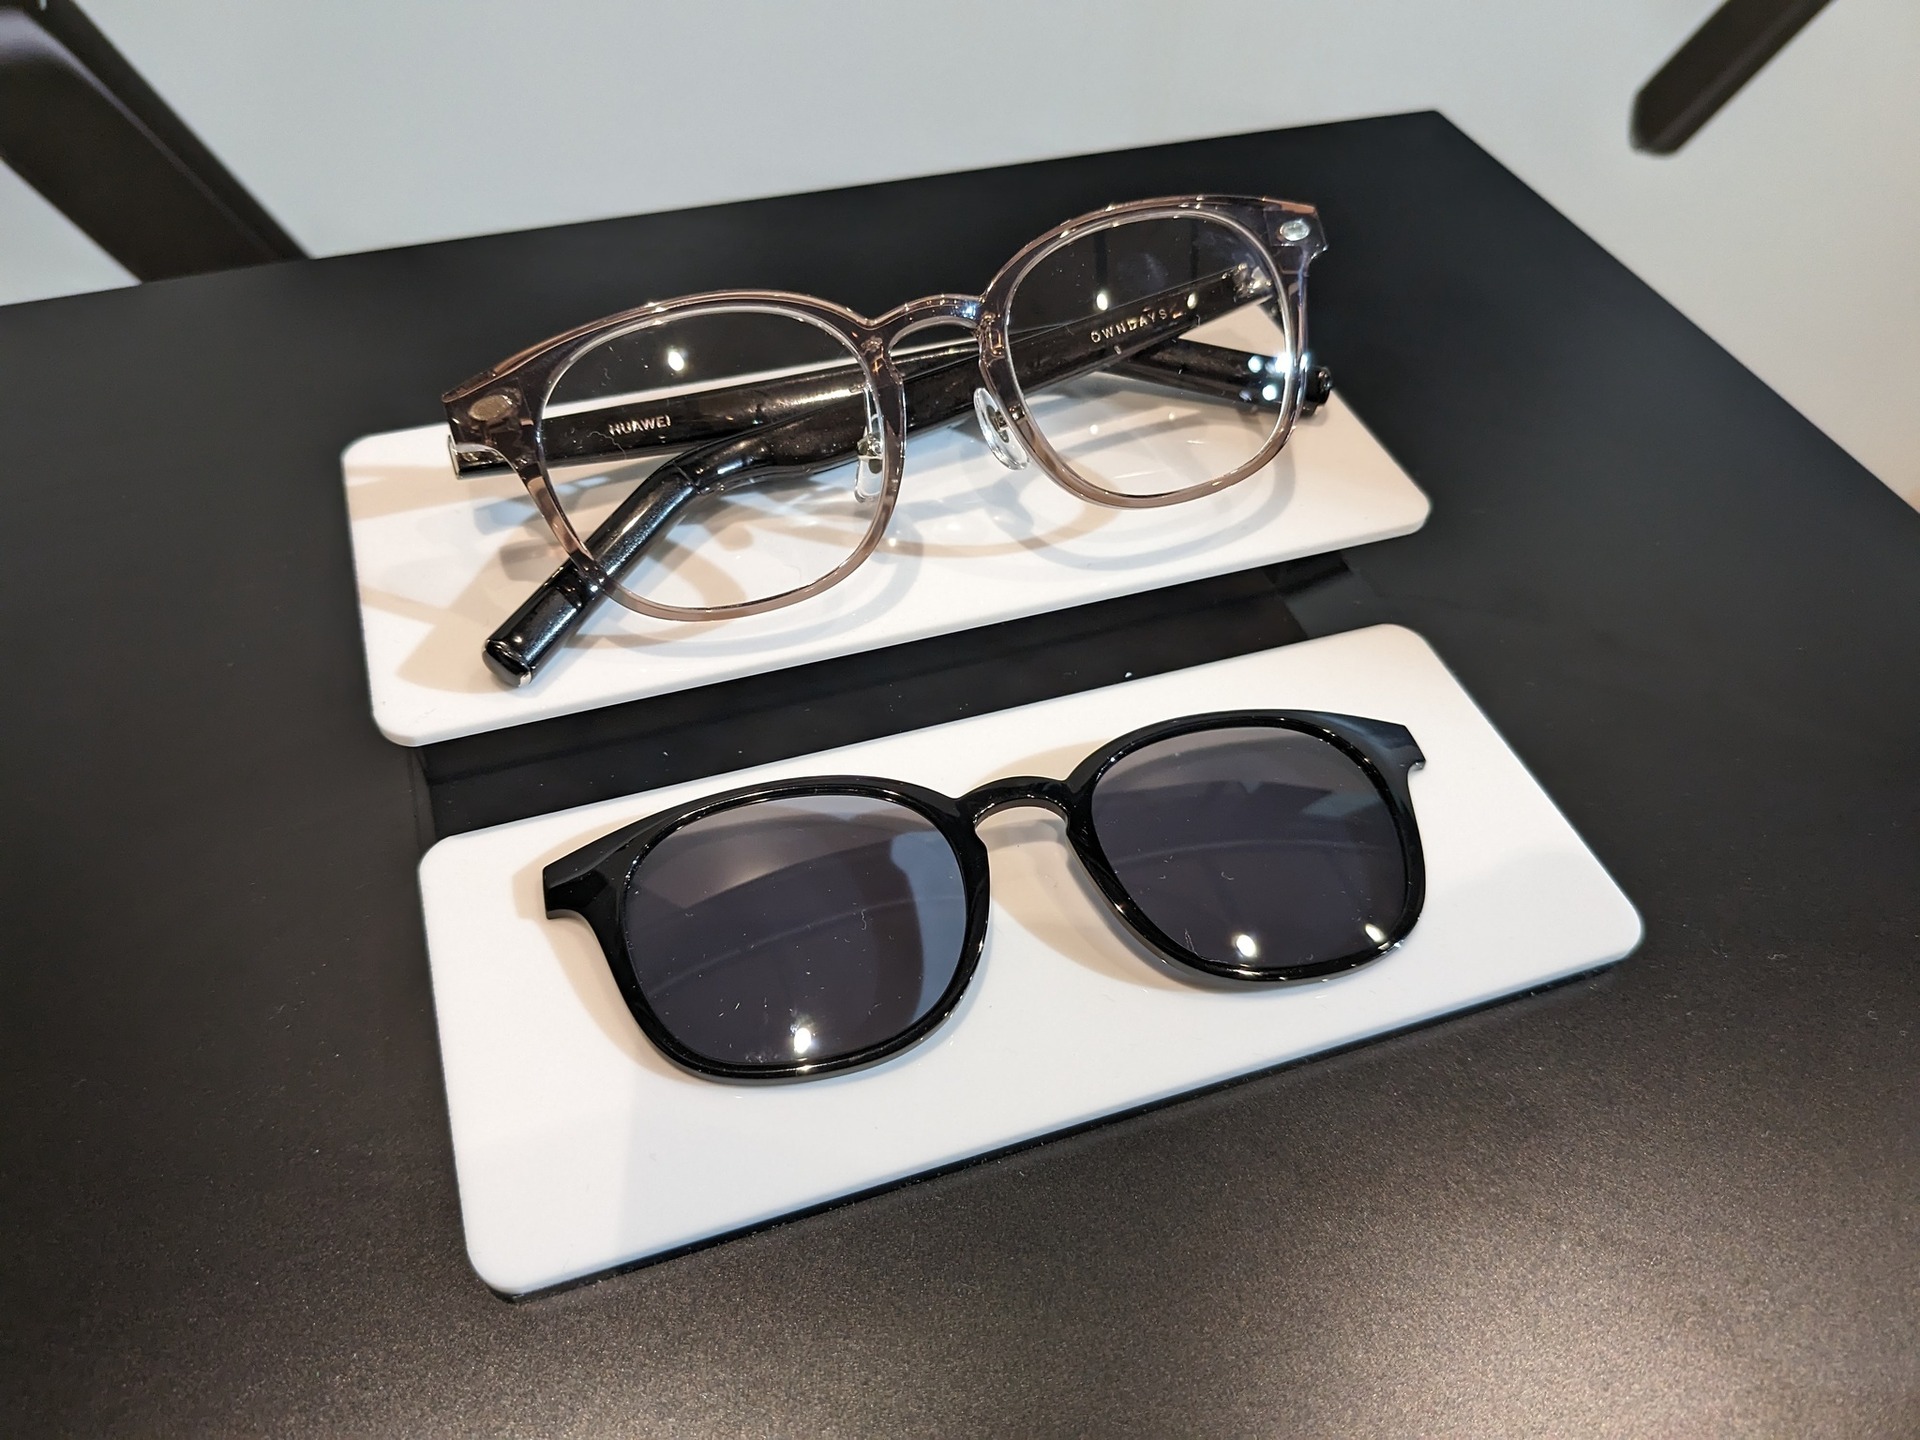 聴こえるメガネ HUAWEI Eyewear 2、OWNDAYSモデル発売。4スタイルx2色